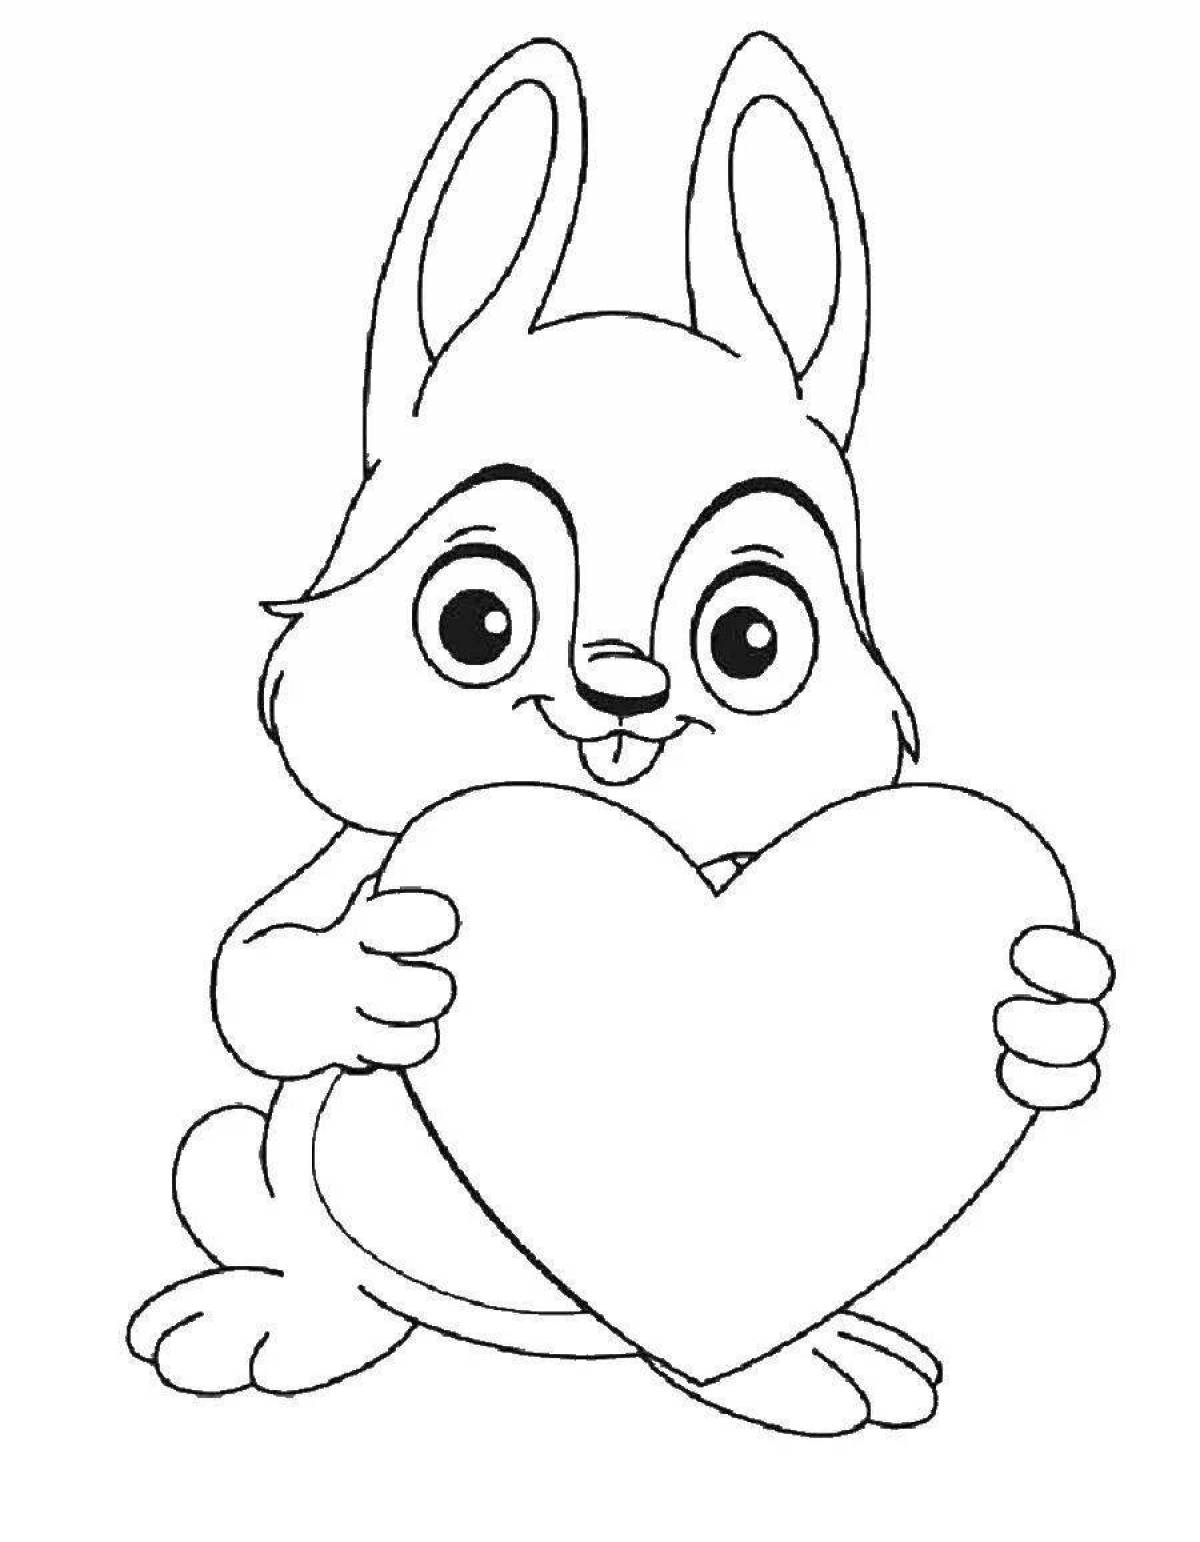 Раскраска лучезарный кролик с сердечком